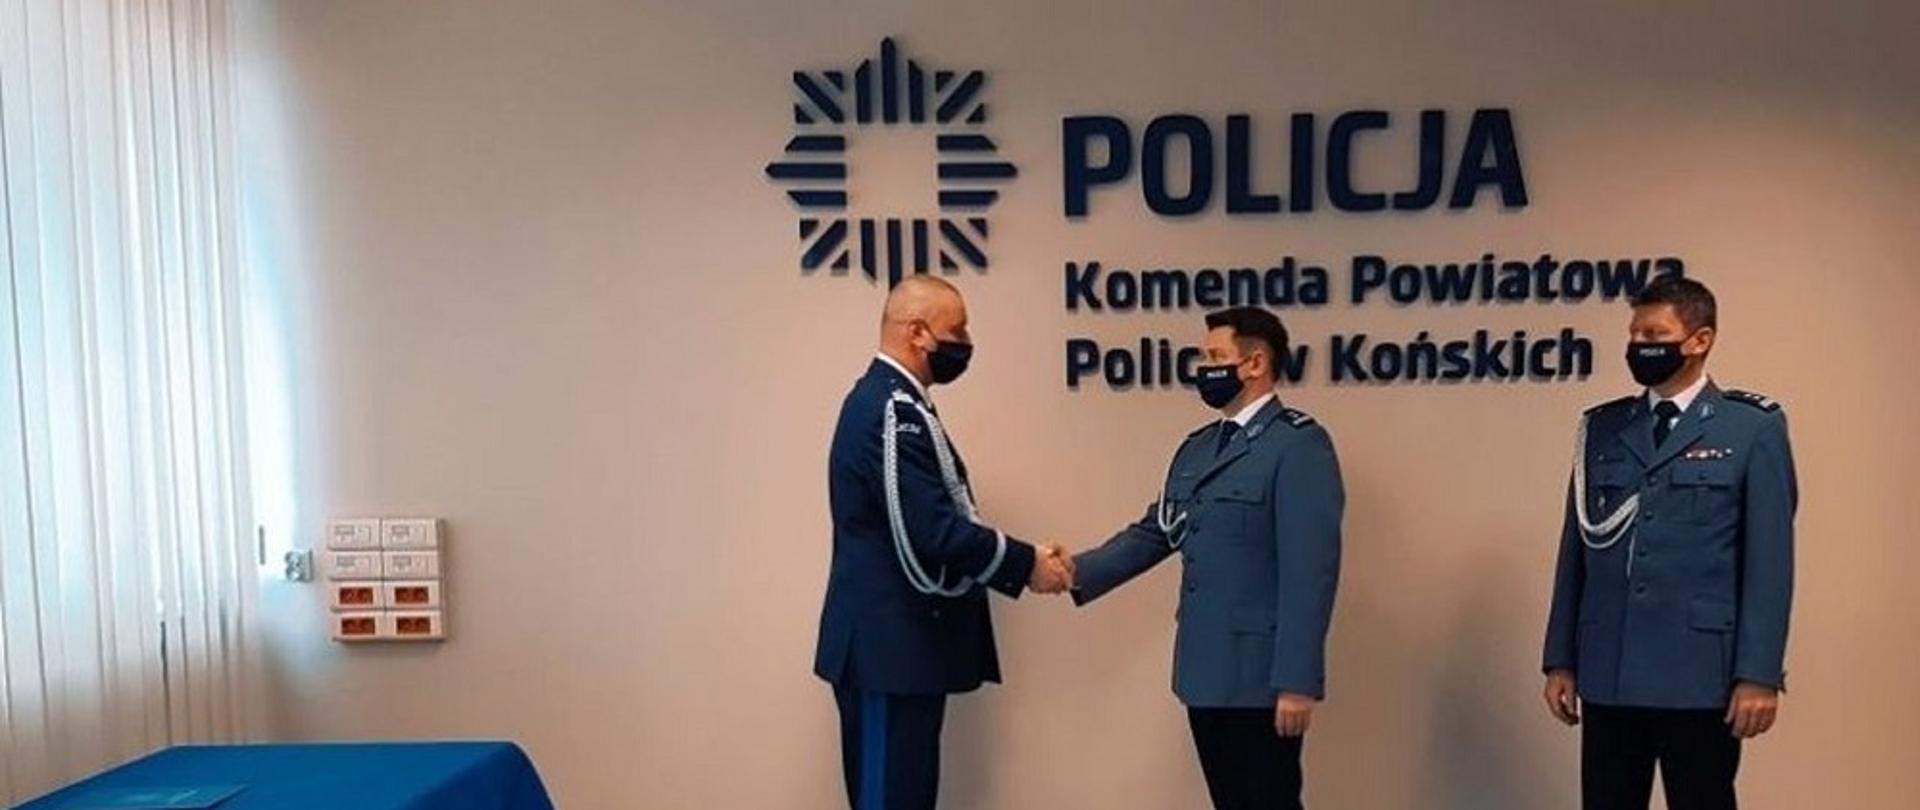 Zaprzysiężenie Komendanta Policji w Końskich